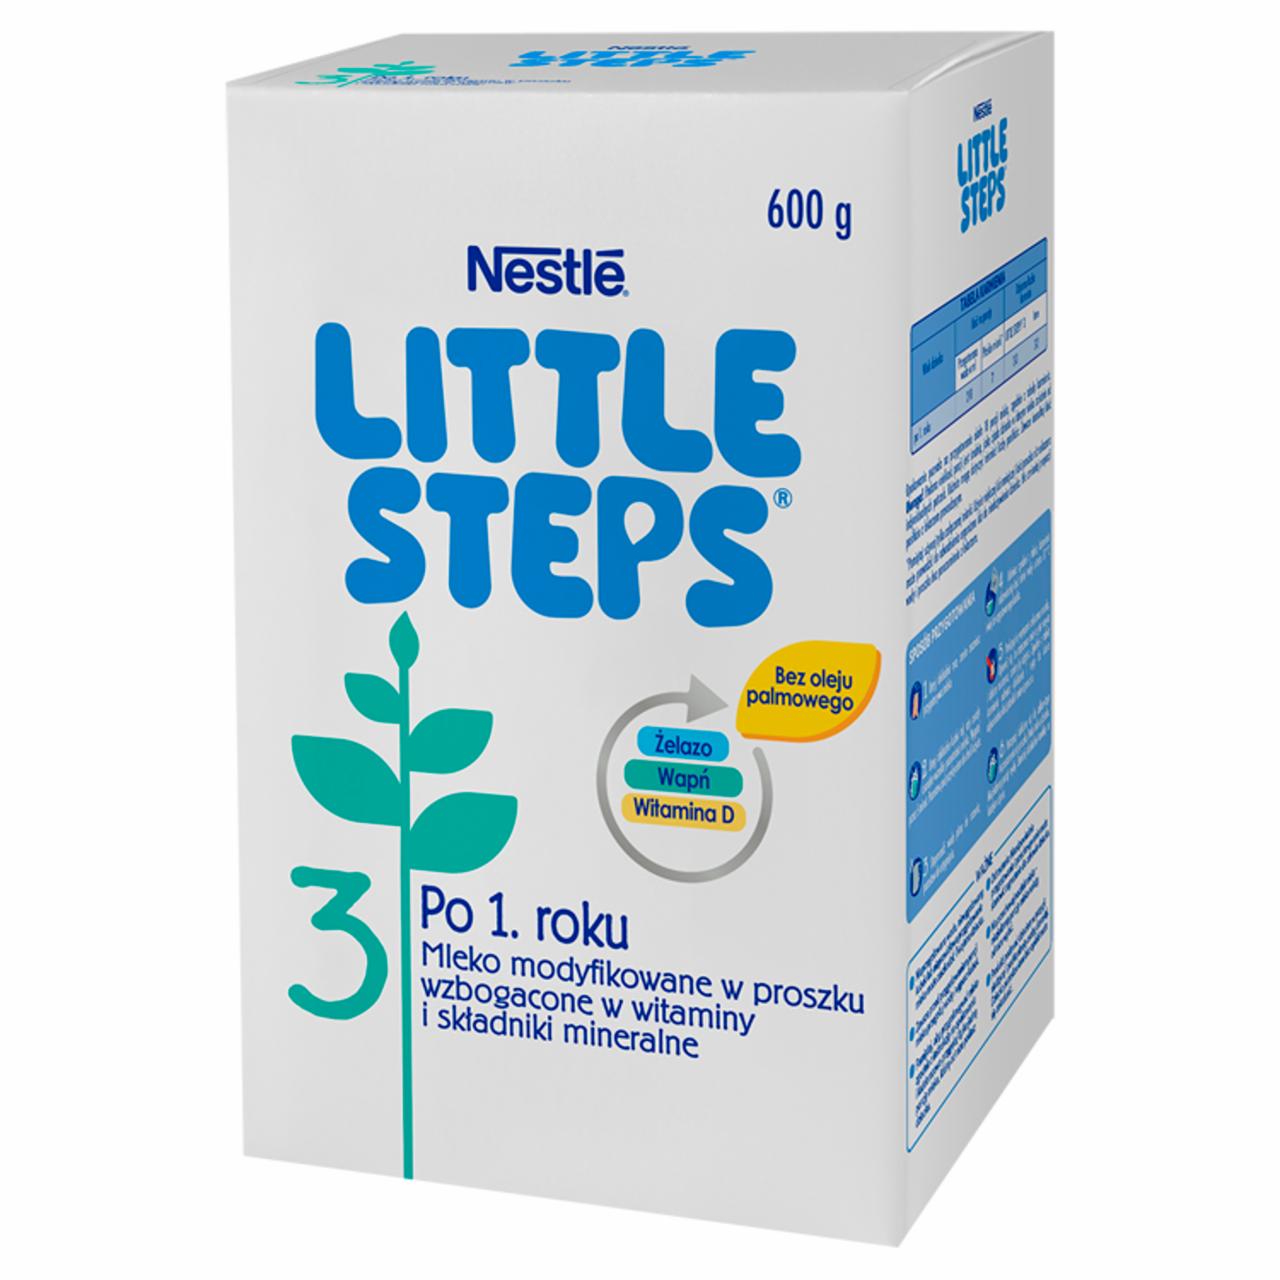 Zdjęcia - LITTLE STEPS 3 Mleko modyfikowane w proszku dla dzieci po 1. roku 600 g (2 x 300 g)